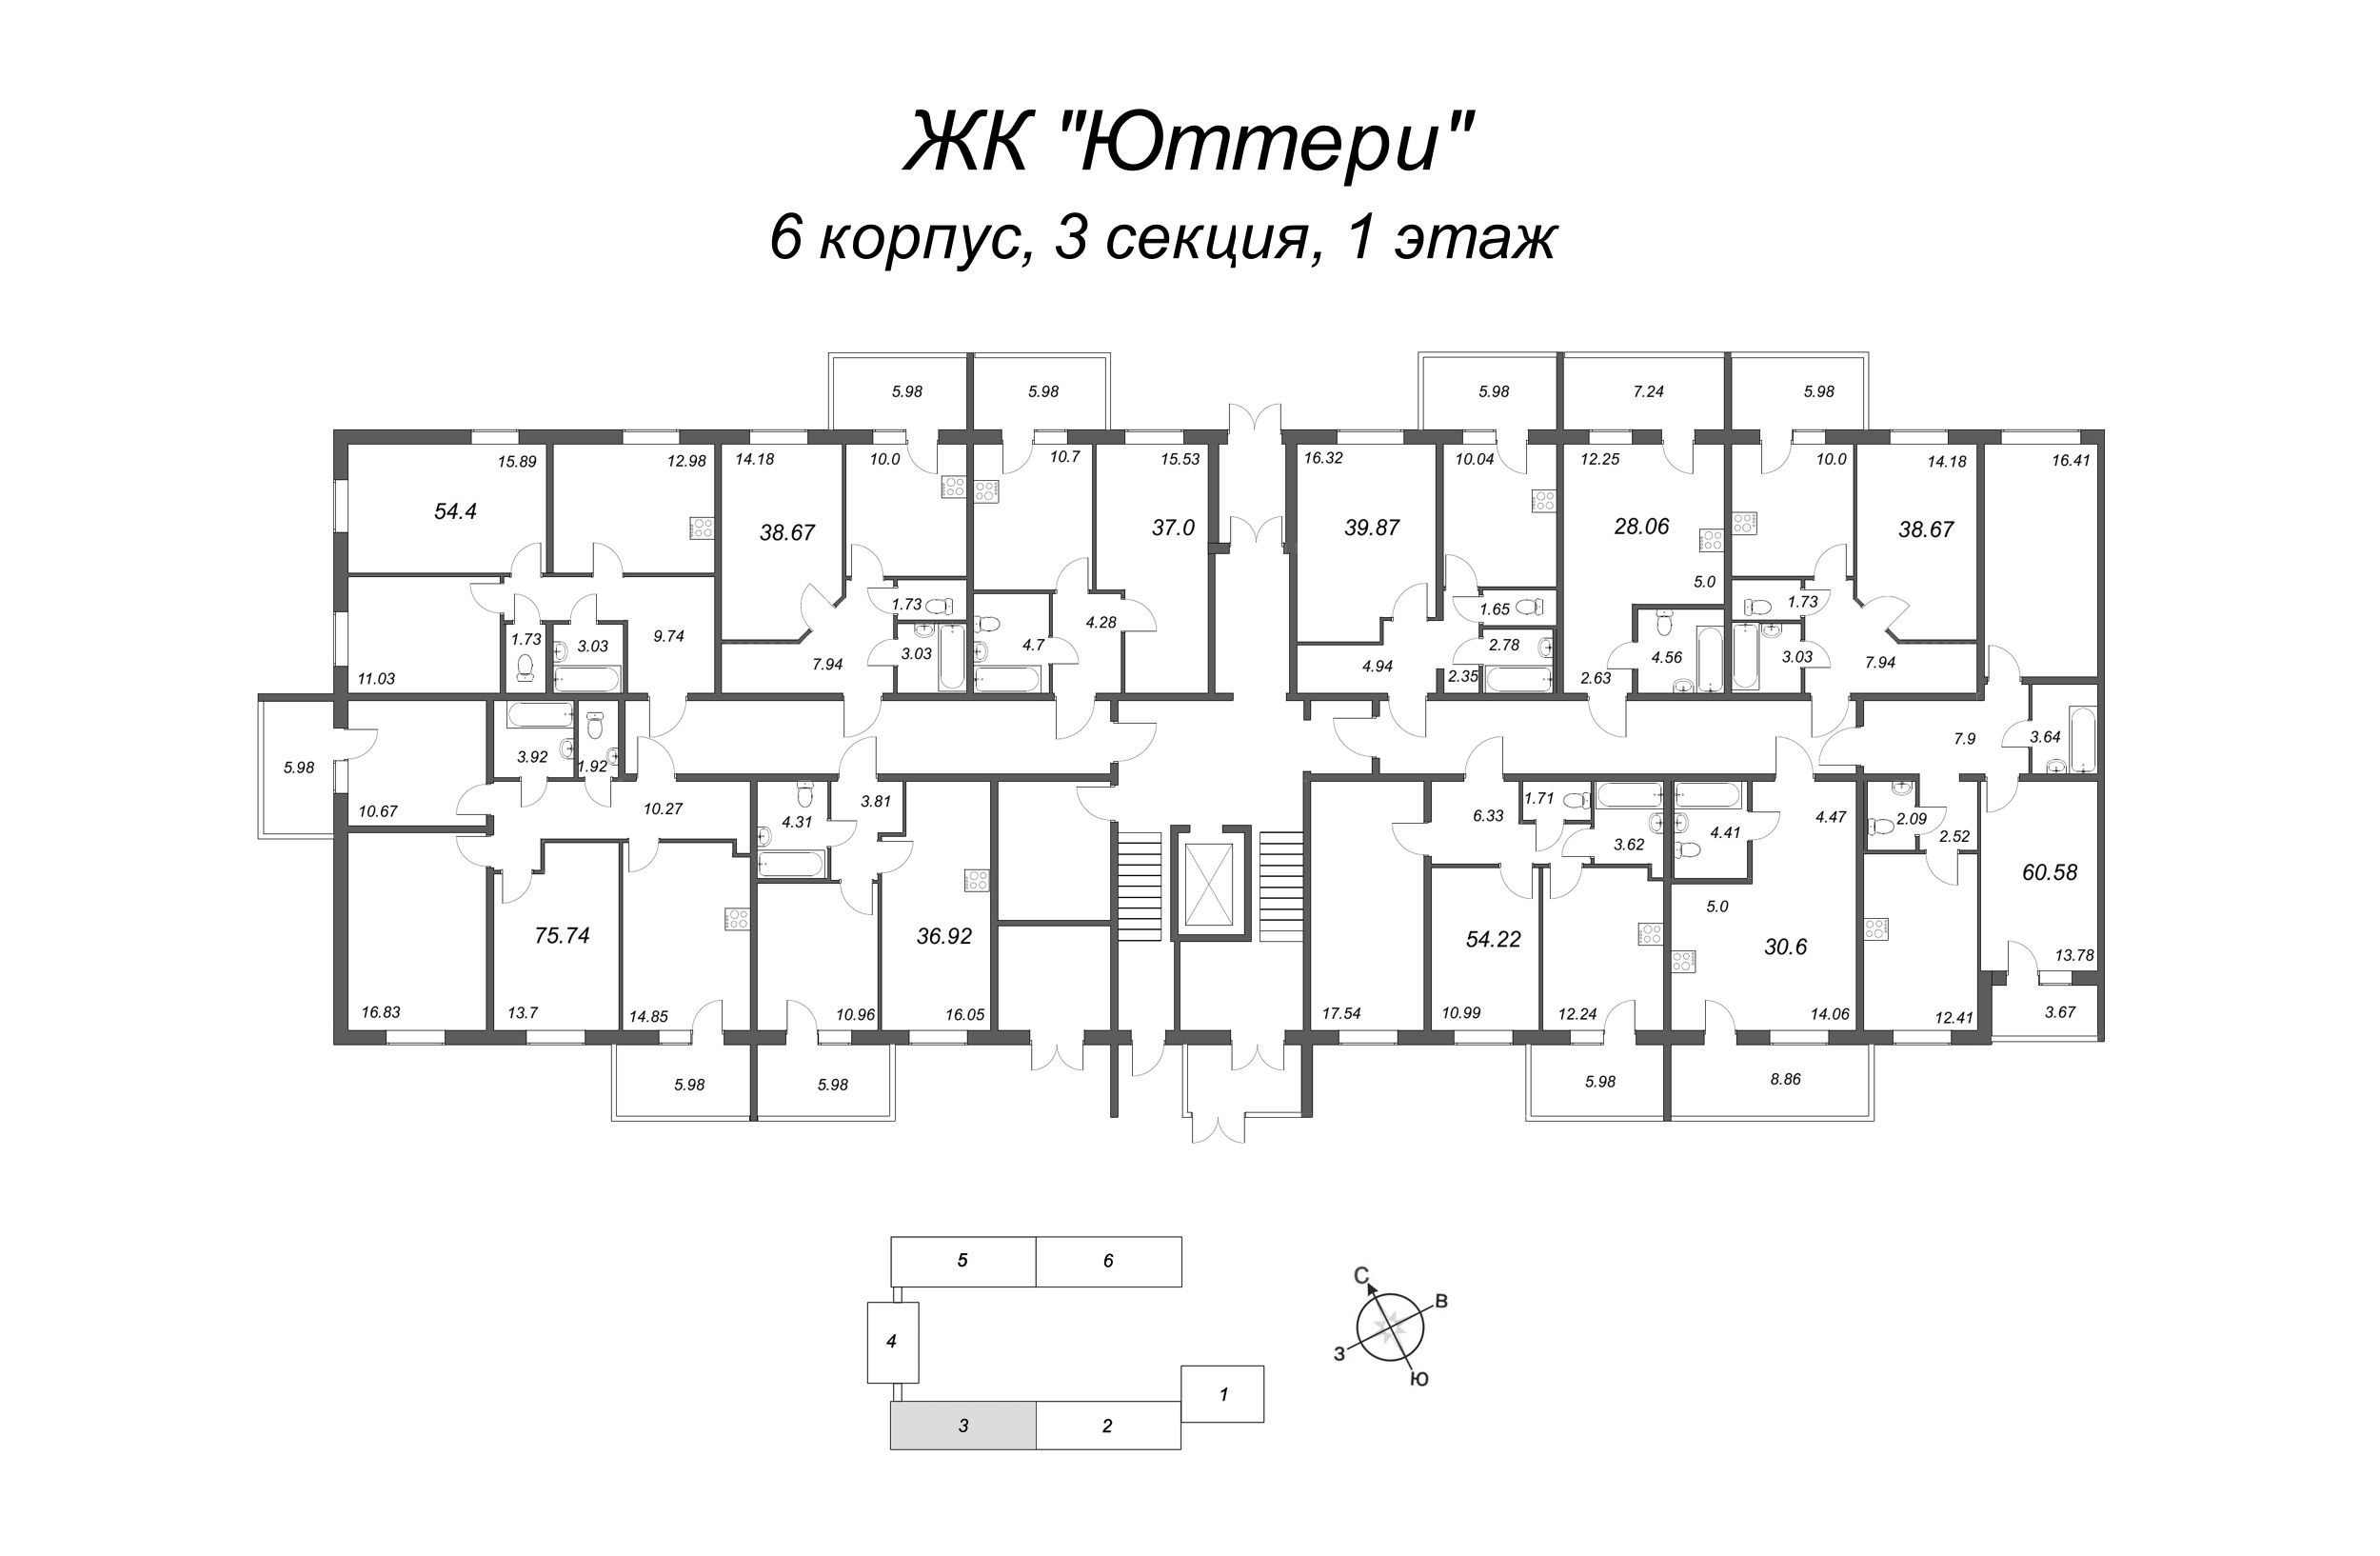 Квартира-студия, 27.94 м² в ЖК "Юттери" - планировка этажа